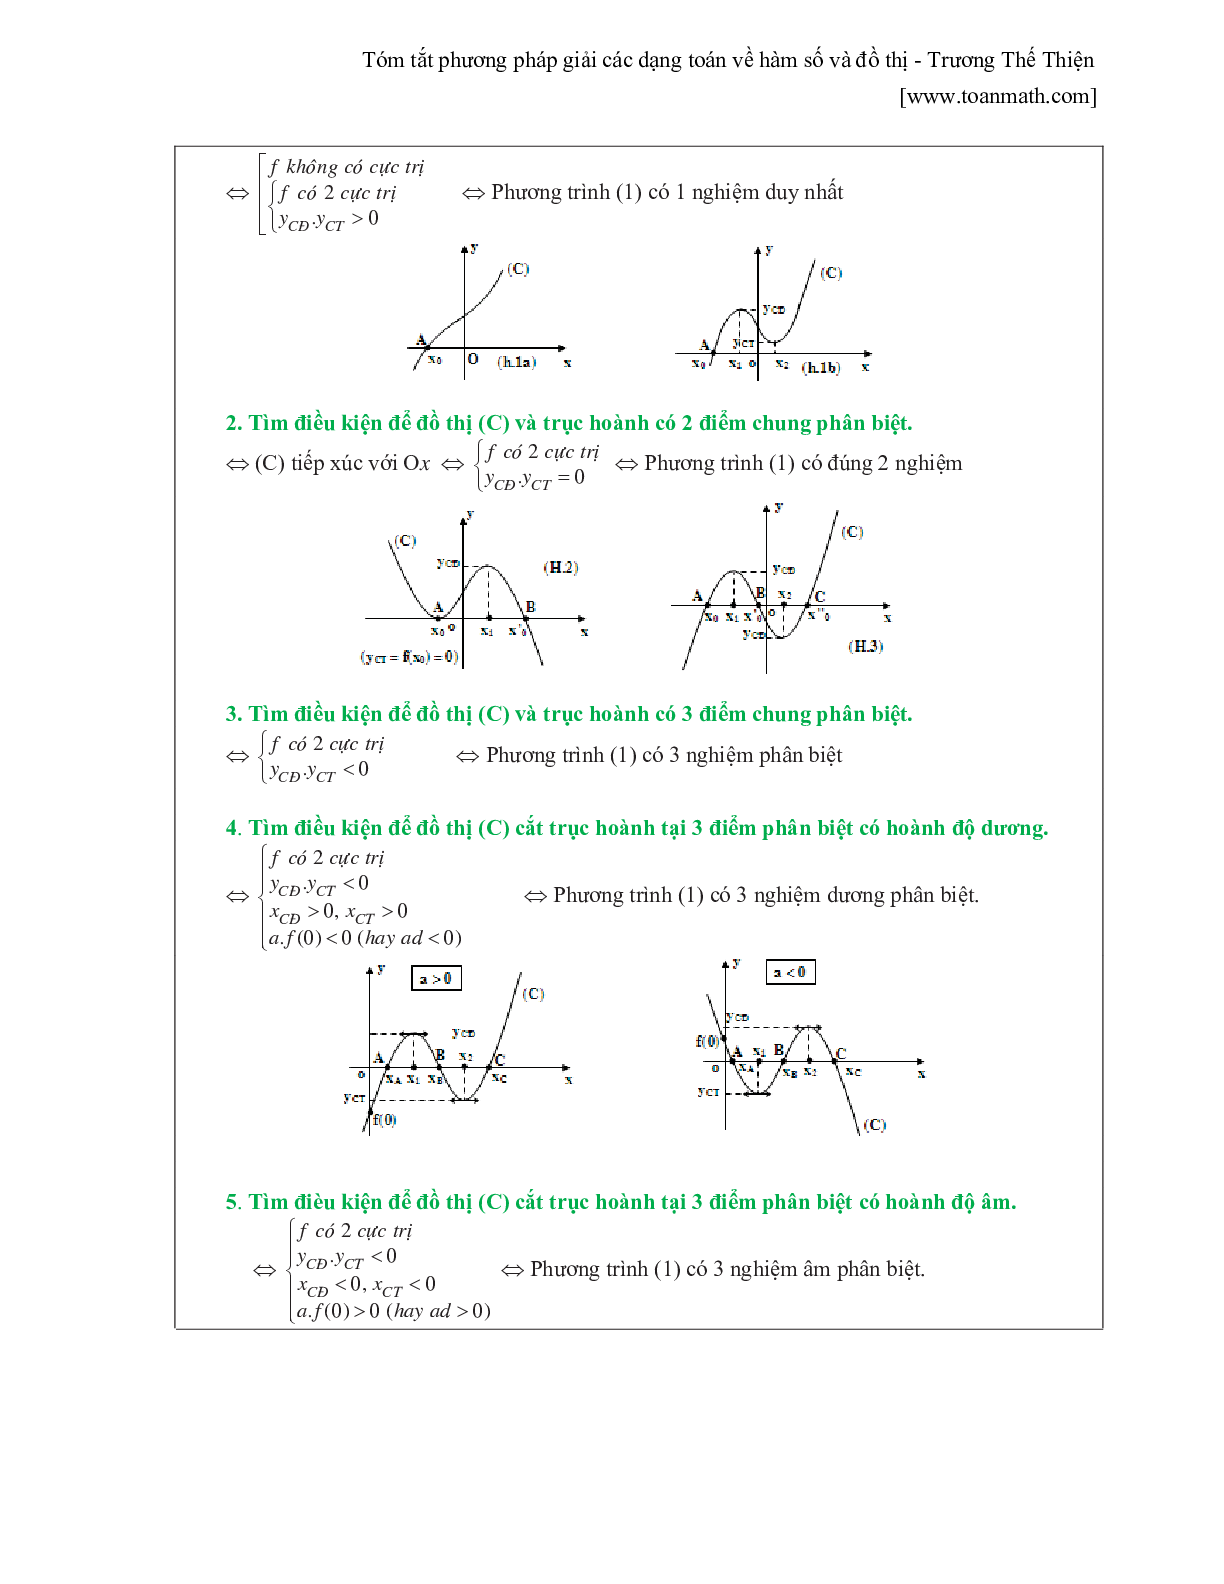 Tóm tắt phương pháp giải các dạng toán về hàm số và đồ thị (trang 6)